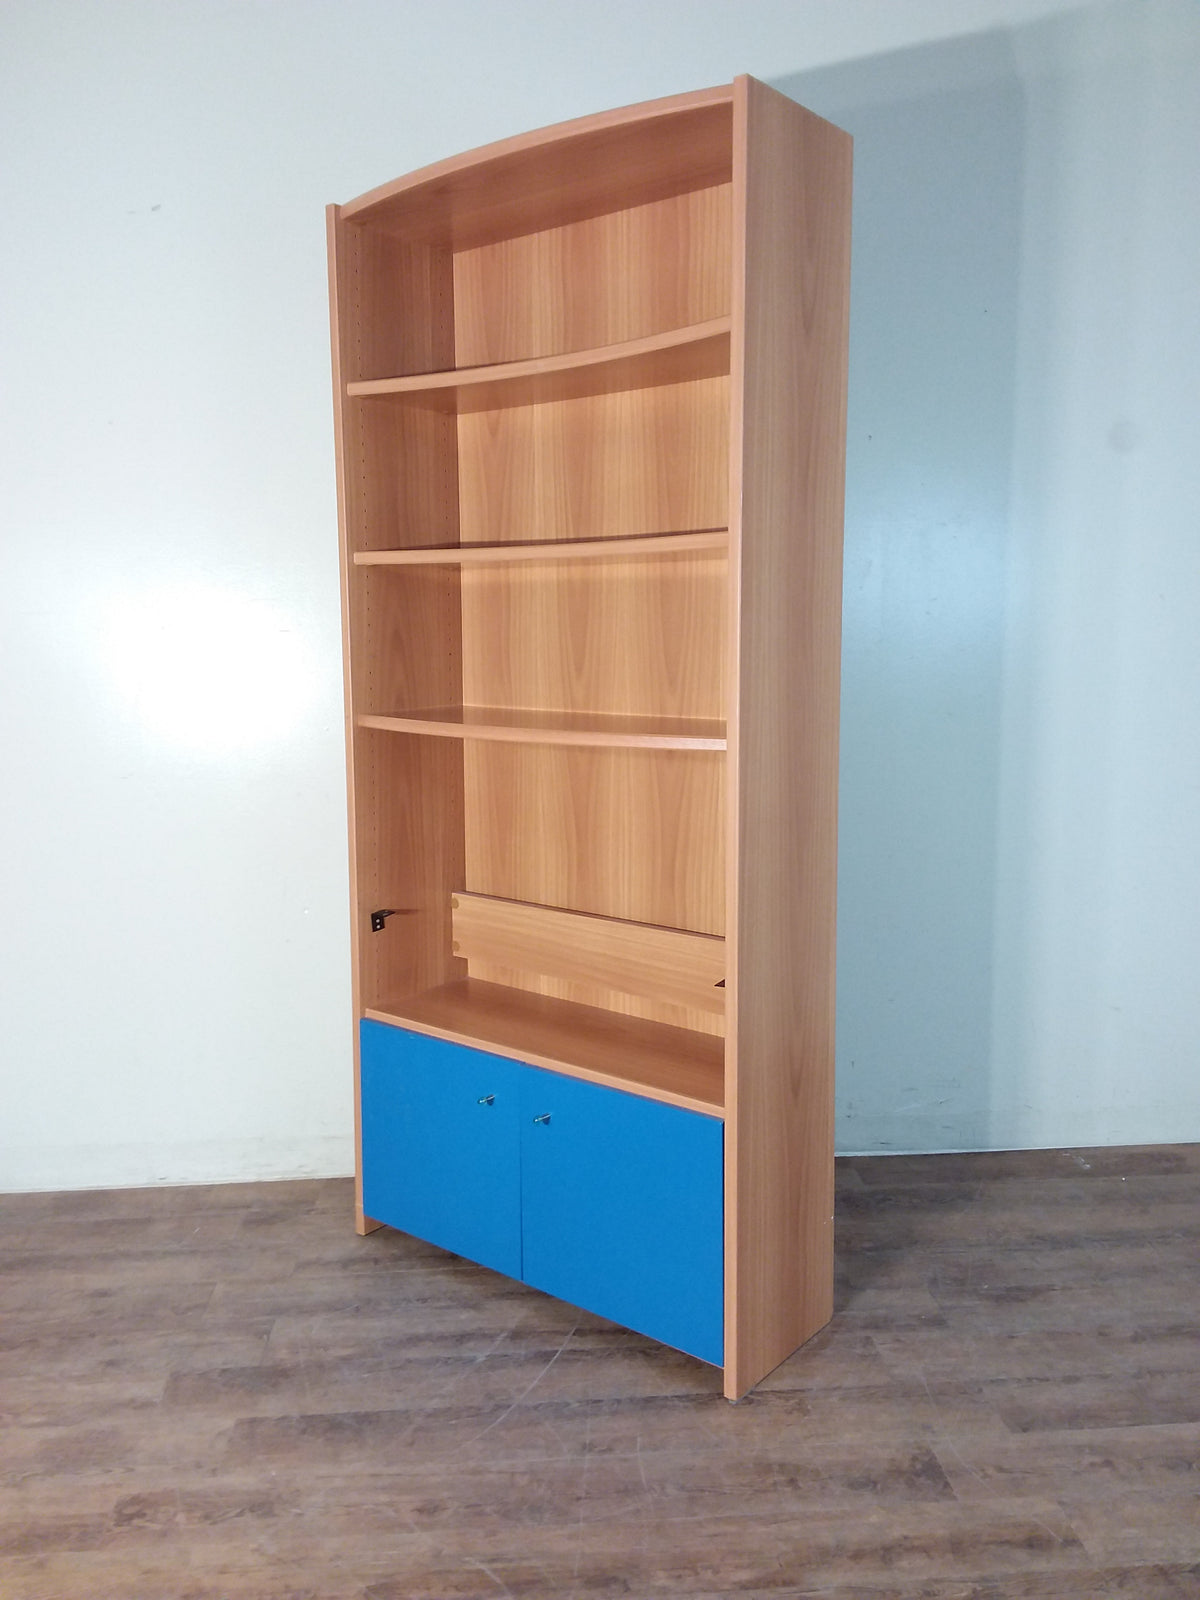 3 Shelf Bookcase With Storage